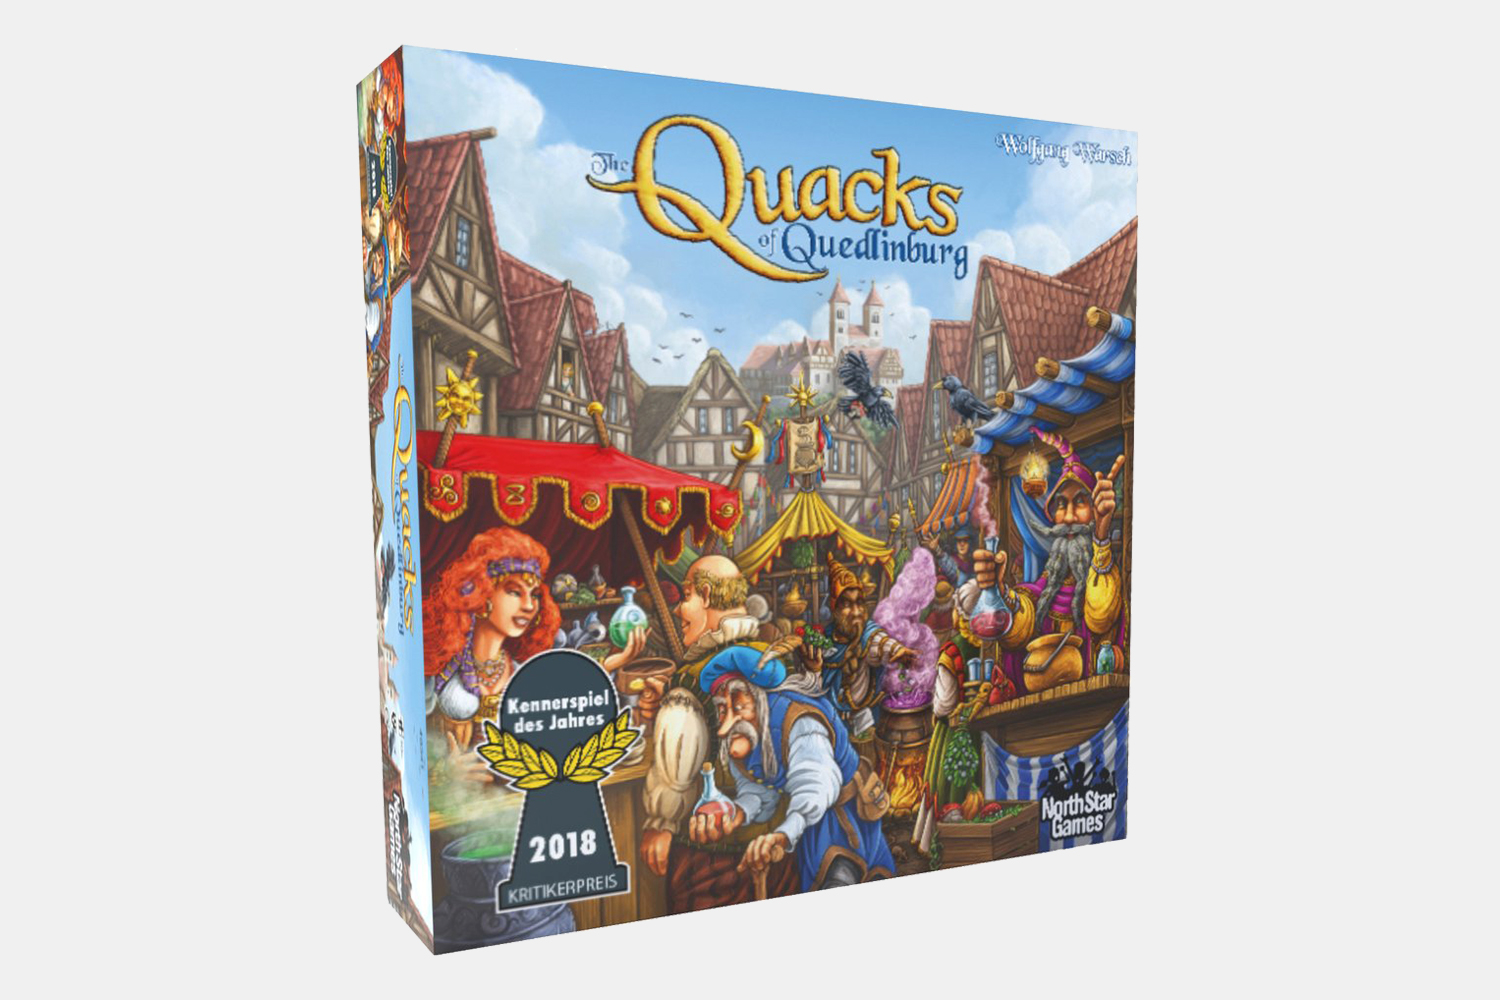 The Quacks of Quedlinburg board game